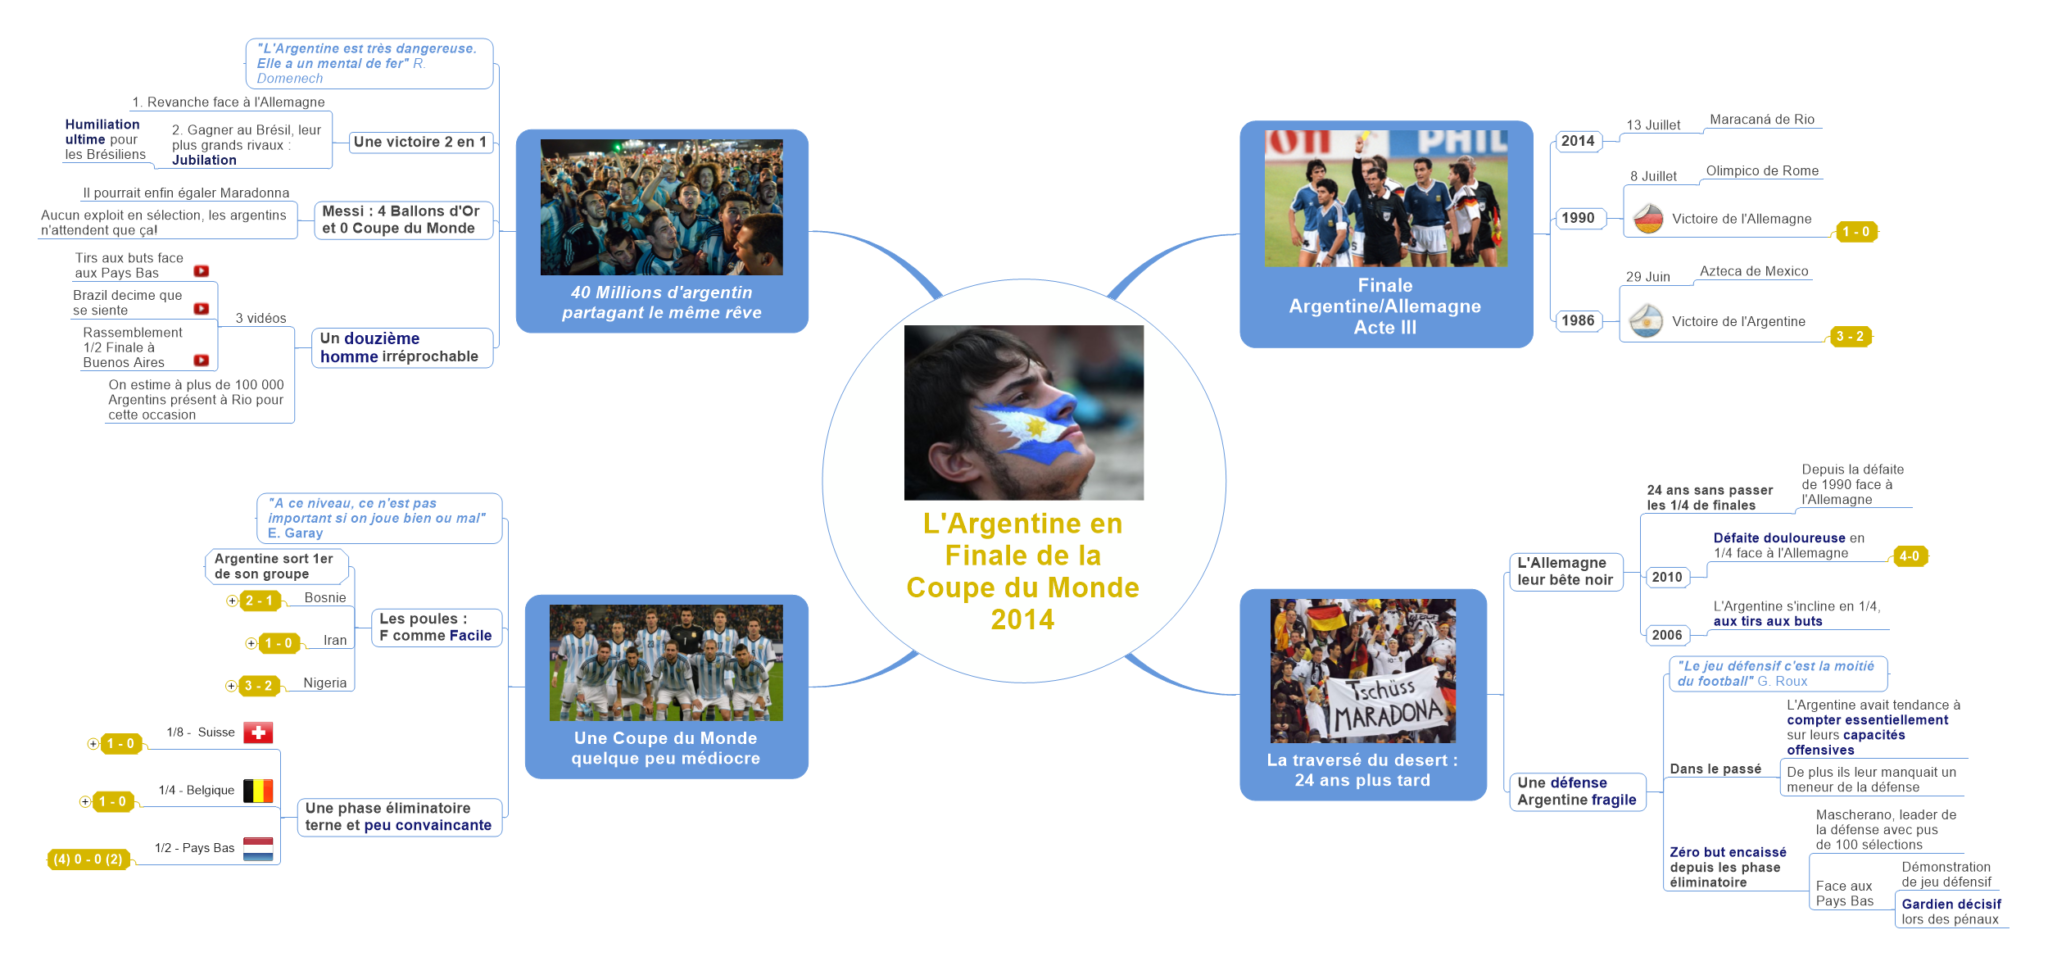 L’Argentine en Finale de la Coupe du Monde 2014